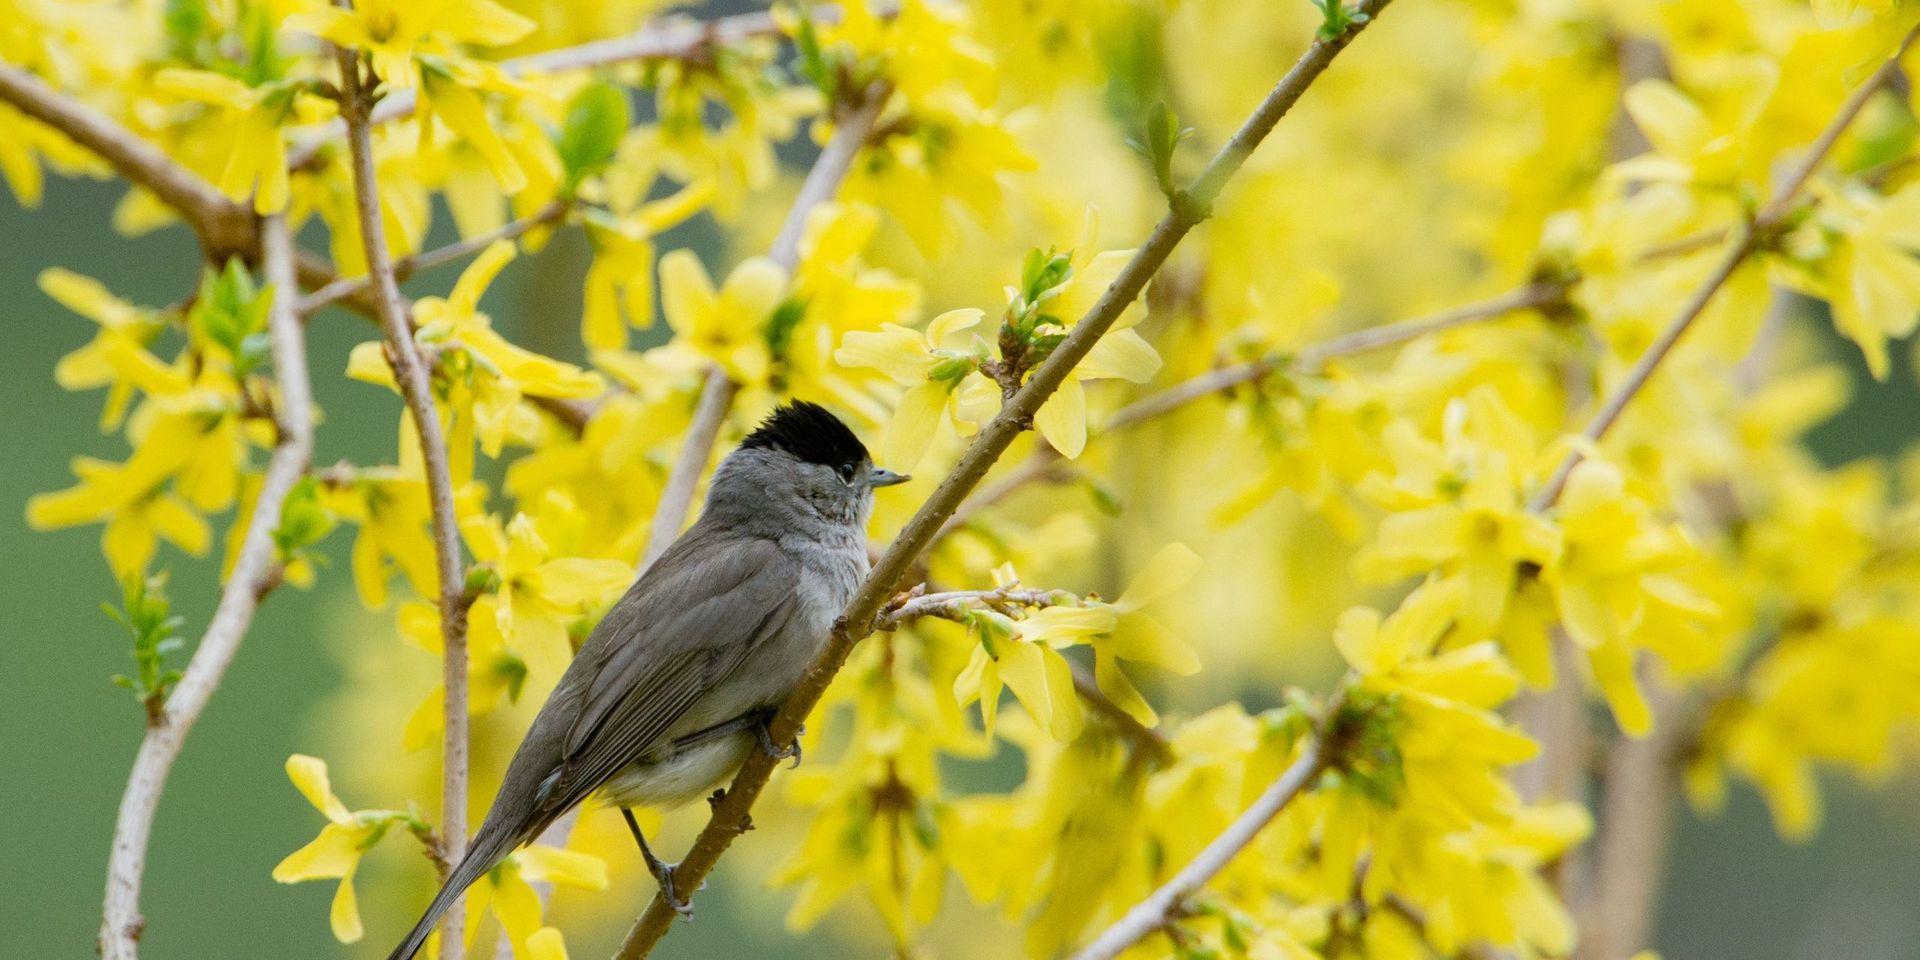 Mer fågelsång än någonsin, har insändarskribenten upplevt under våren och försommaren. Till exempel av svarthättan som syns på bilden.